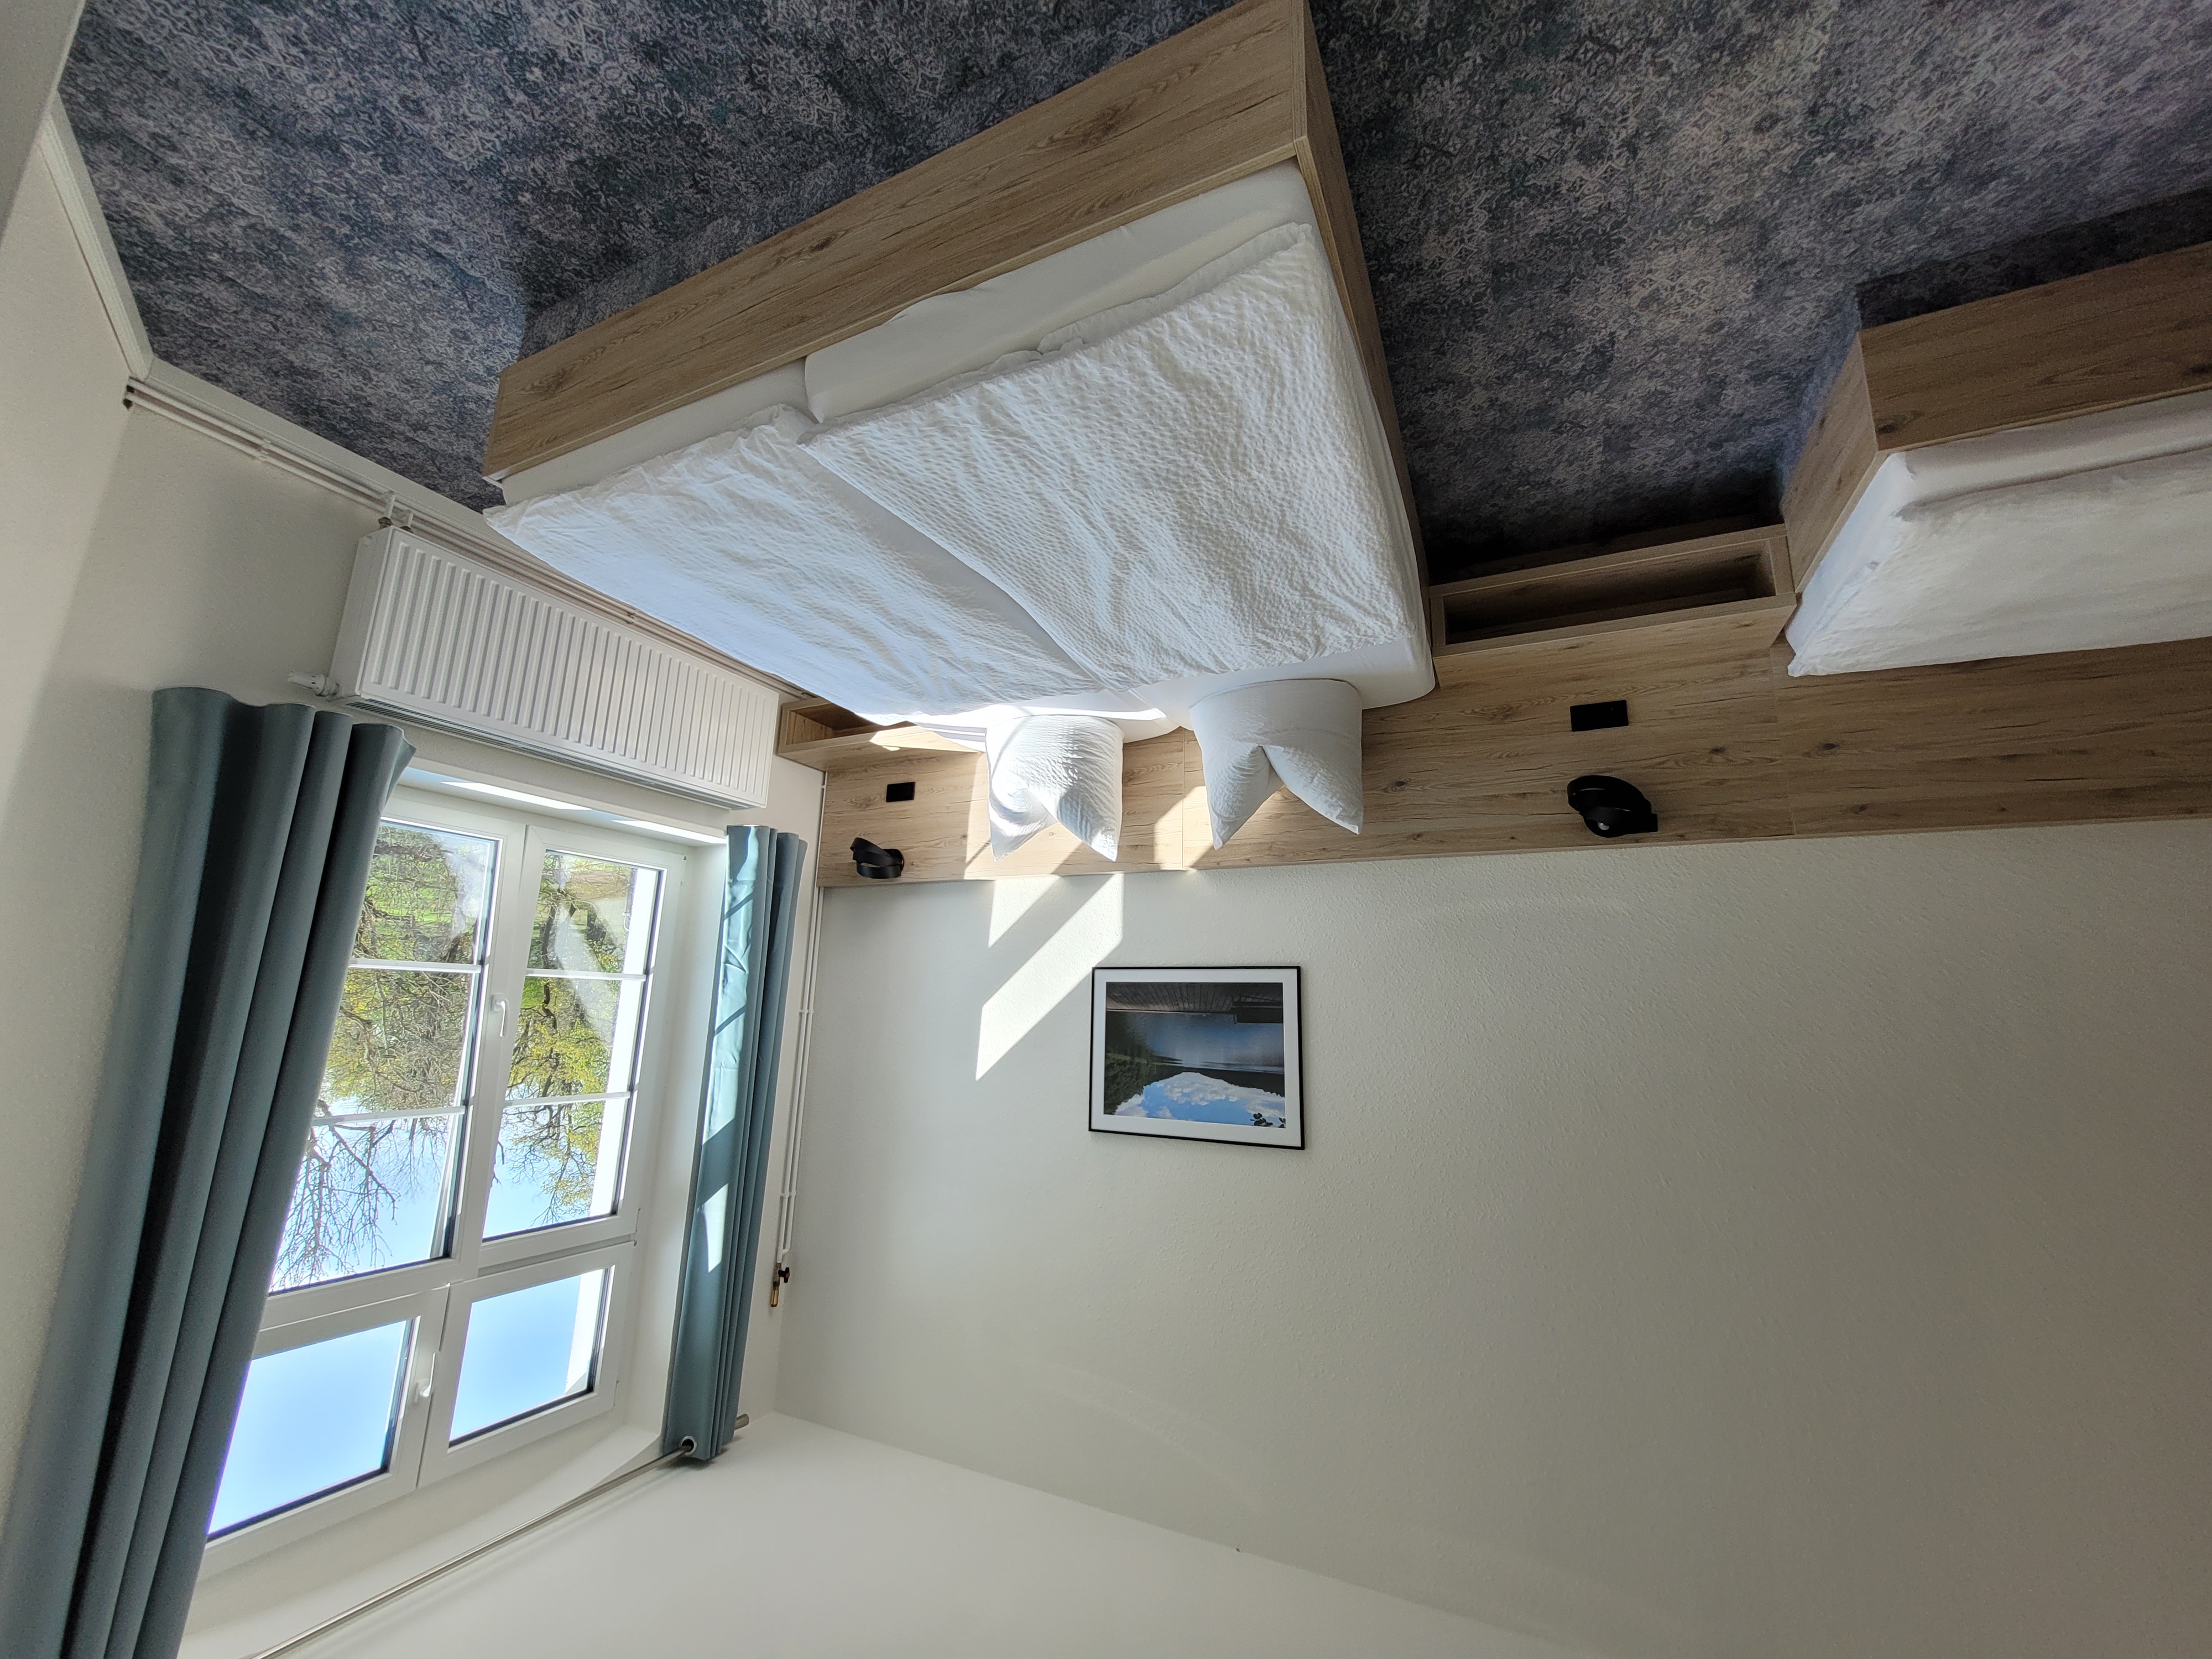 Suite mit getrennten Wohn- und Schlafraum - Zimmeransicht